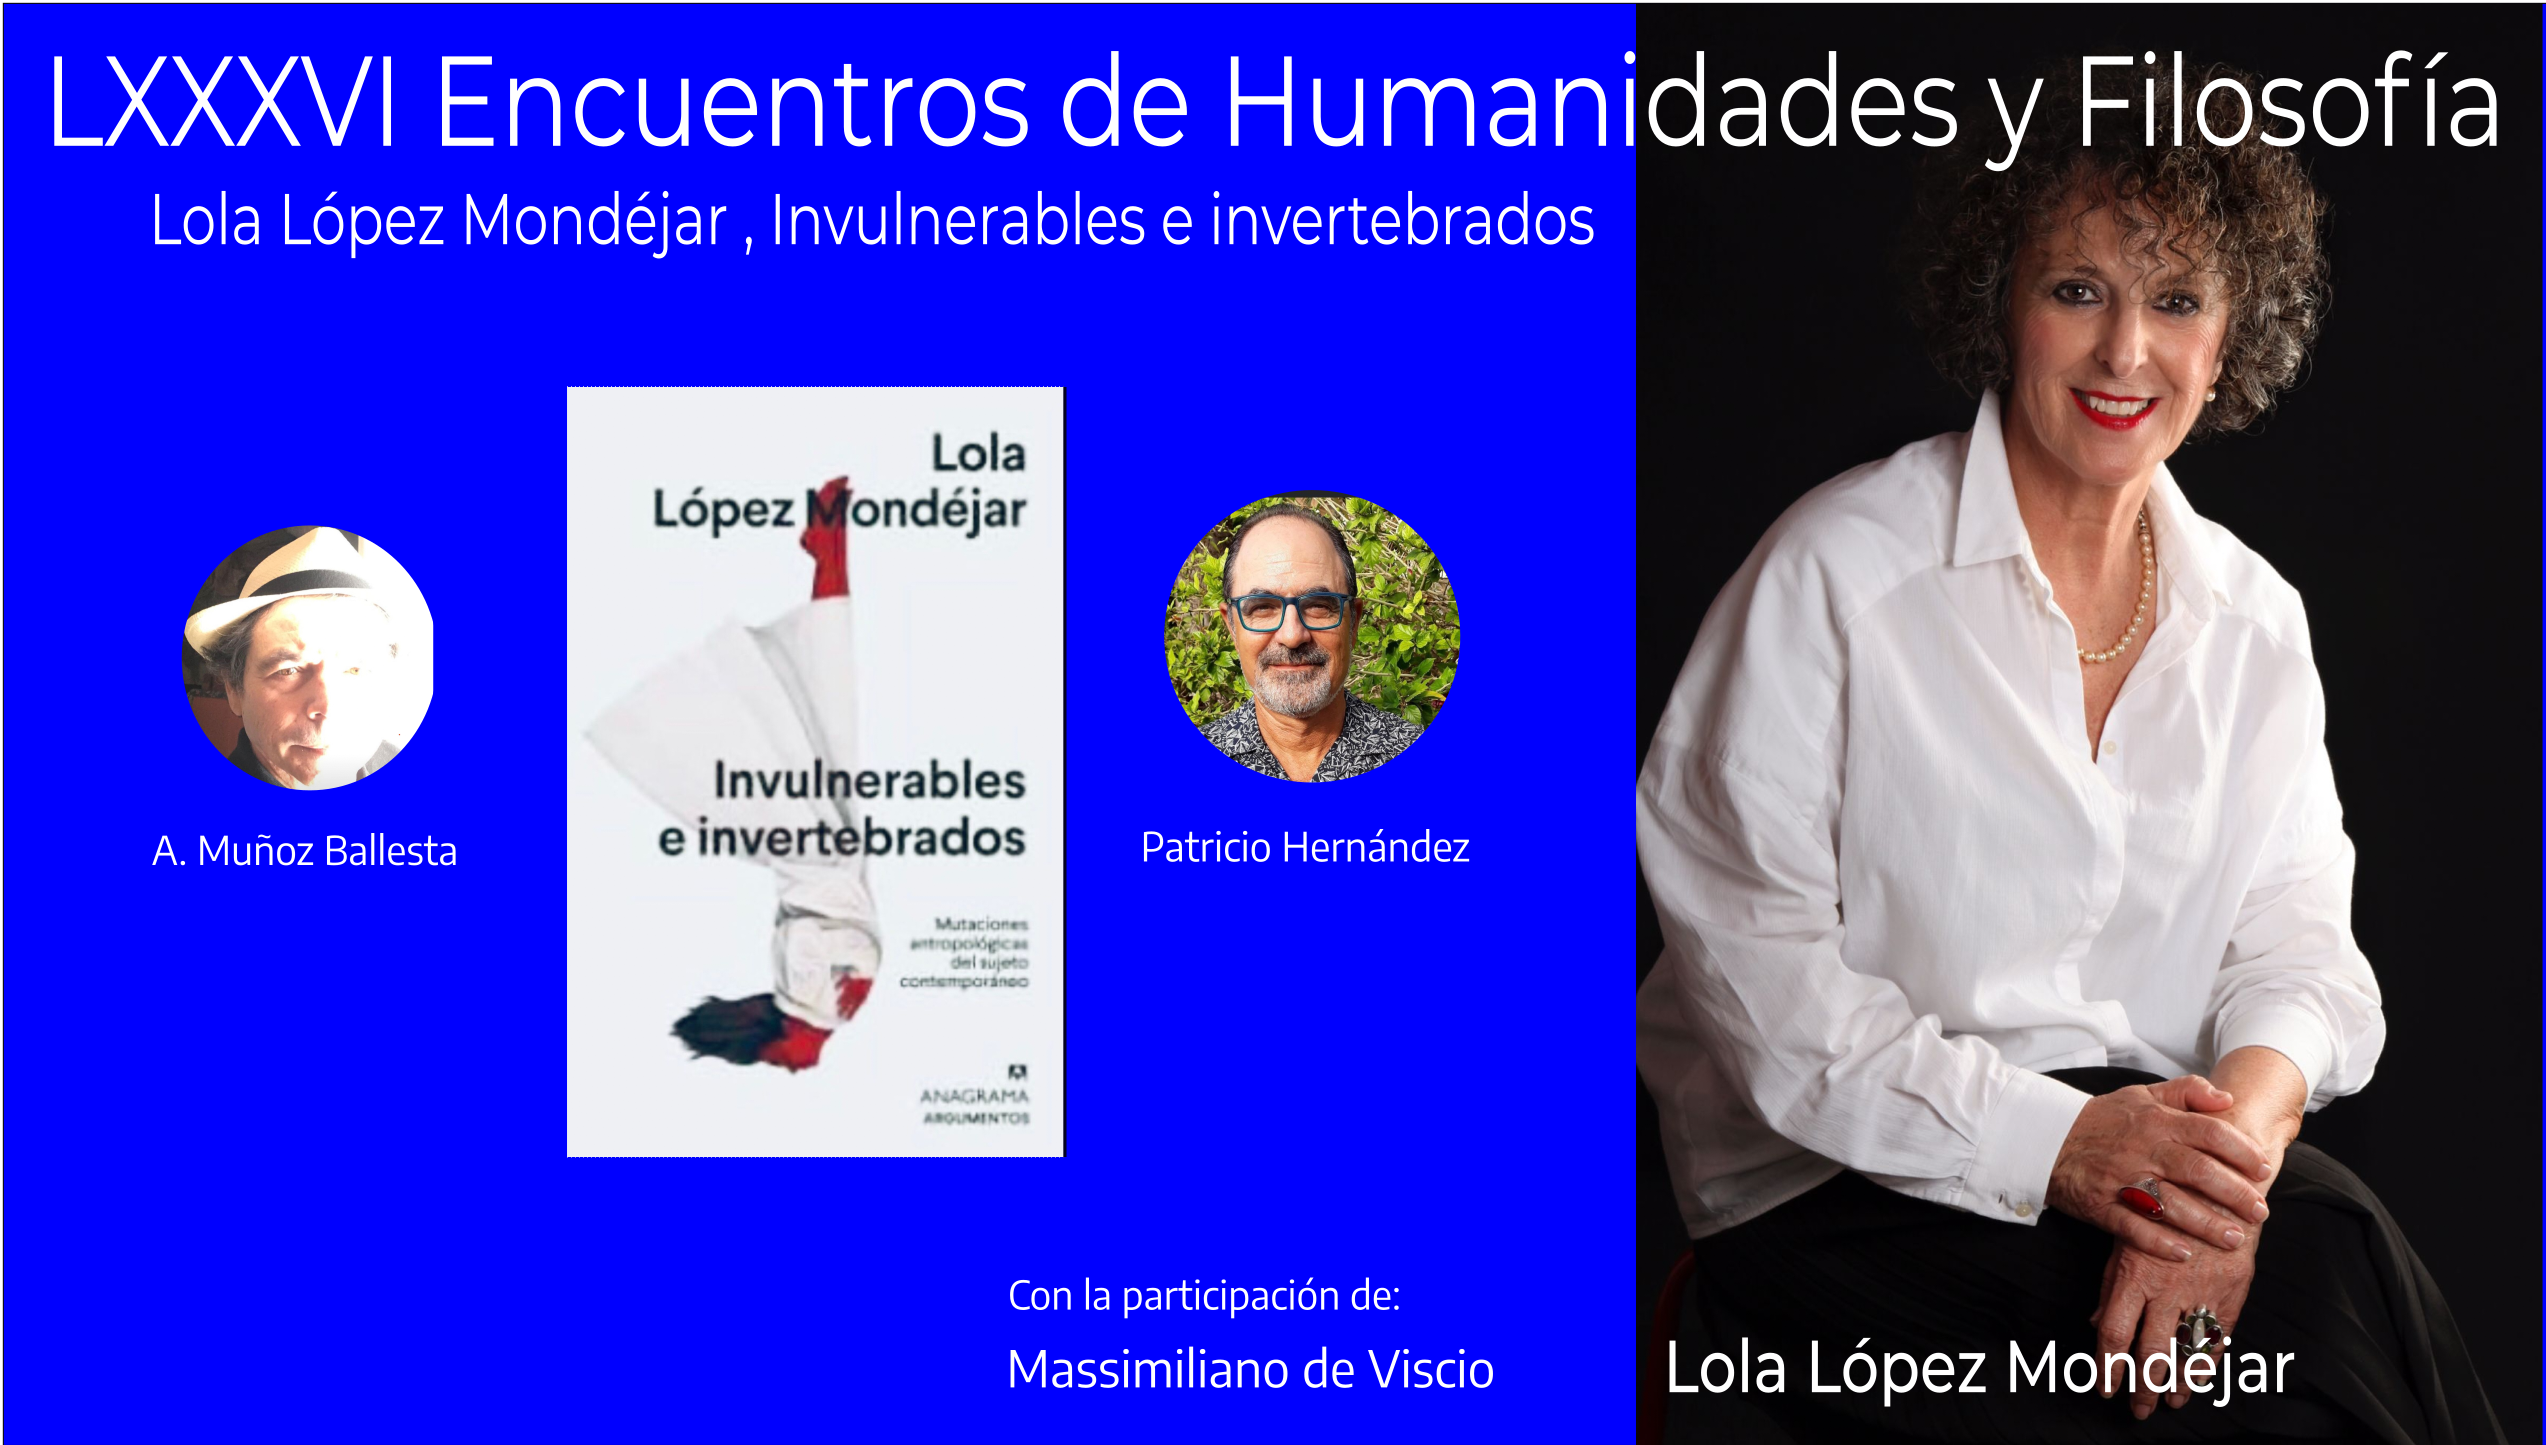  LXXXV Encuentro de Humanidades y Filosofía: Villacañas, Lola López Mondéjar, Invulnerables e invertebrados .